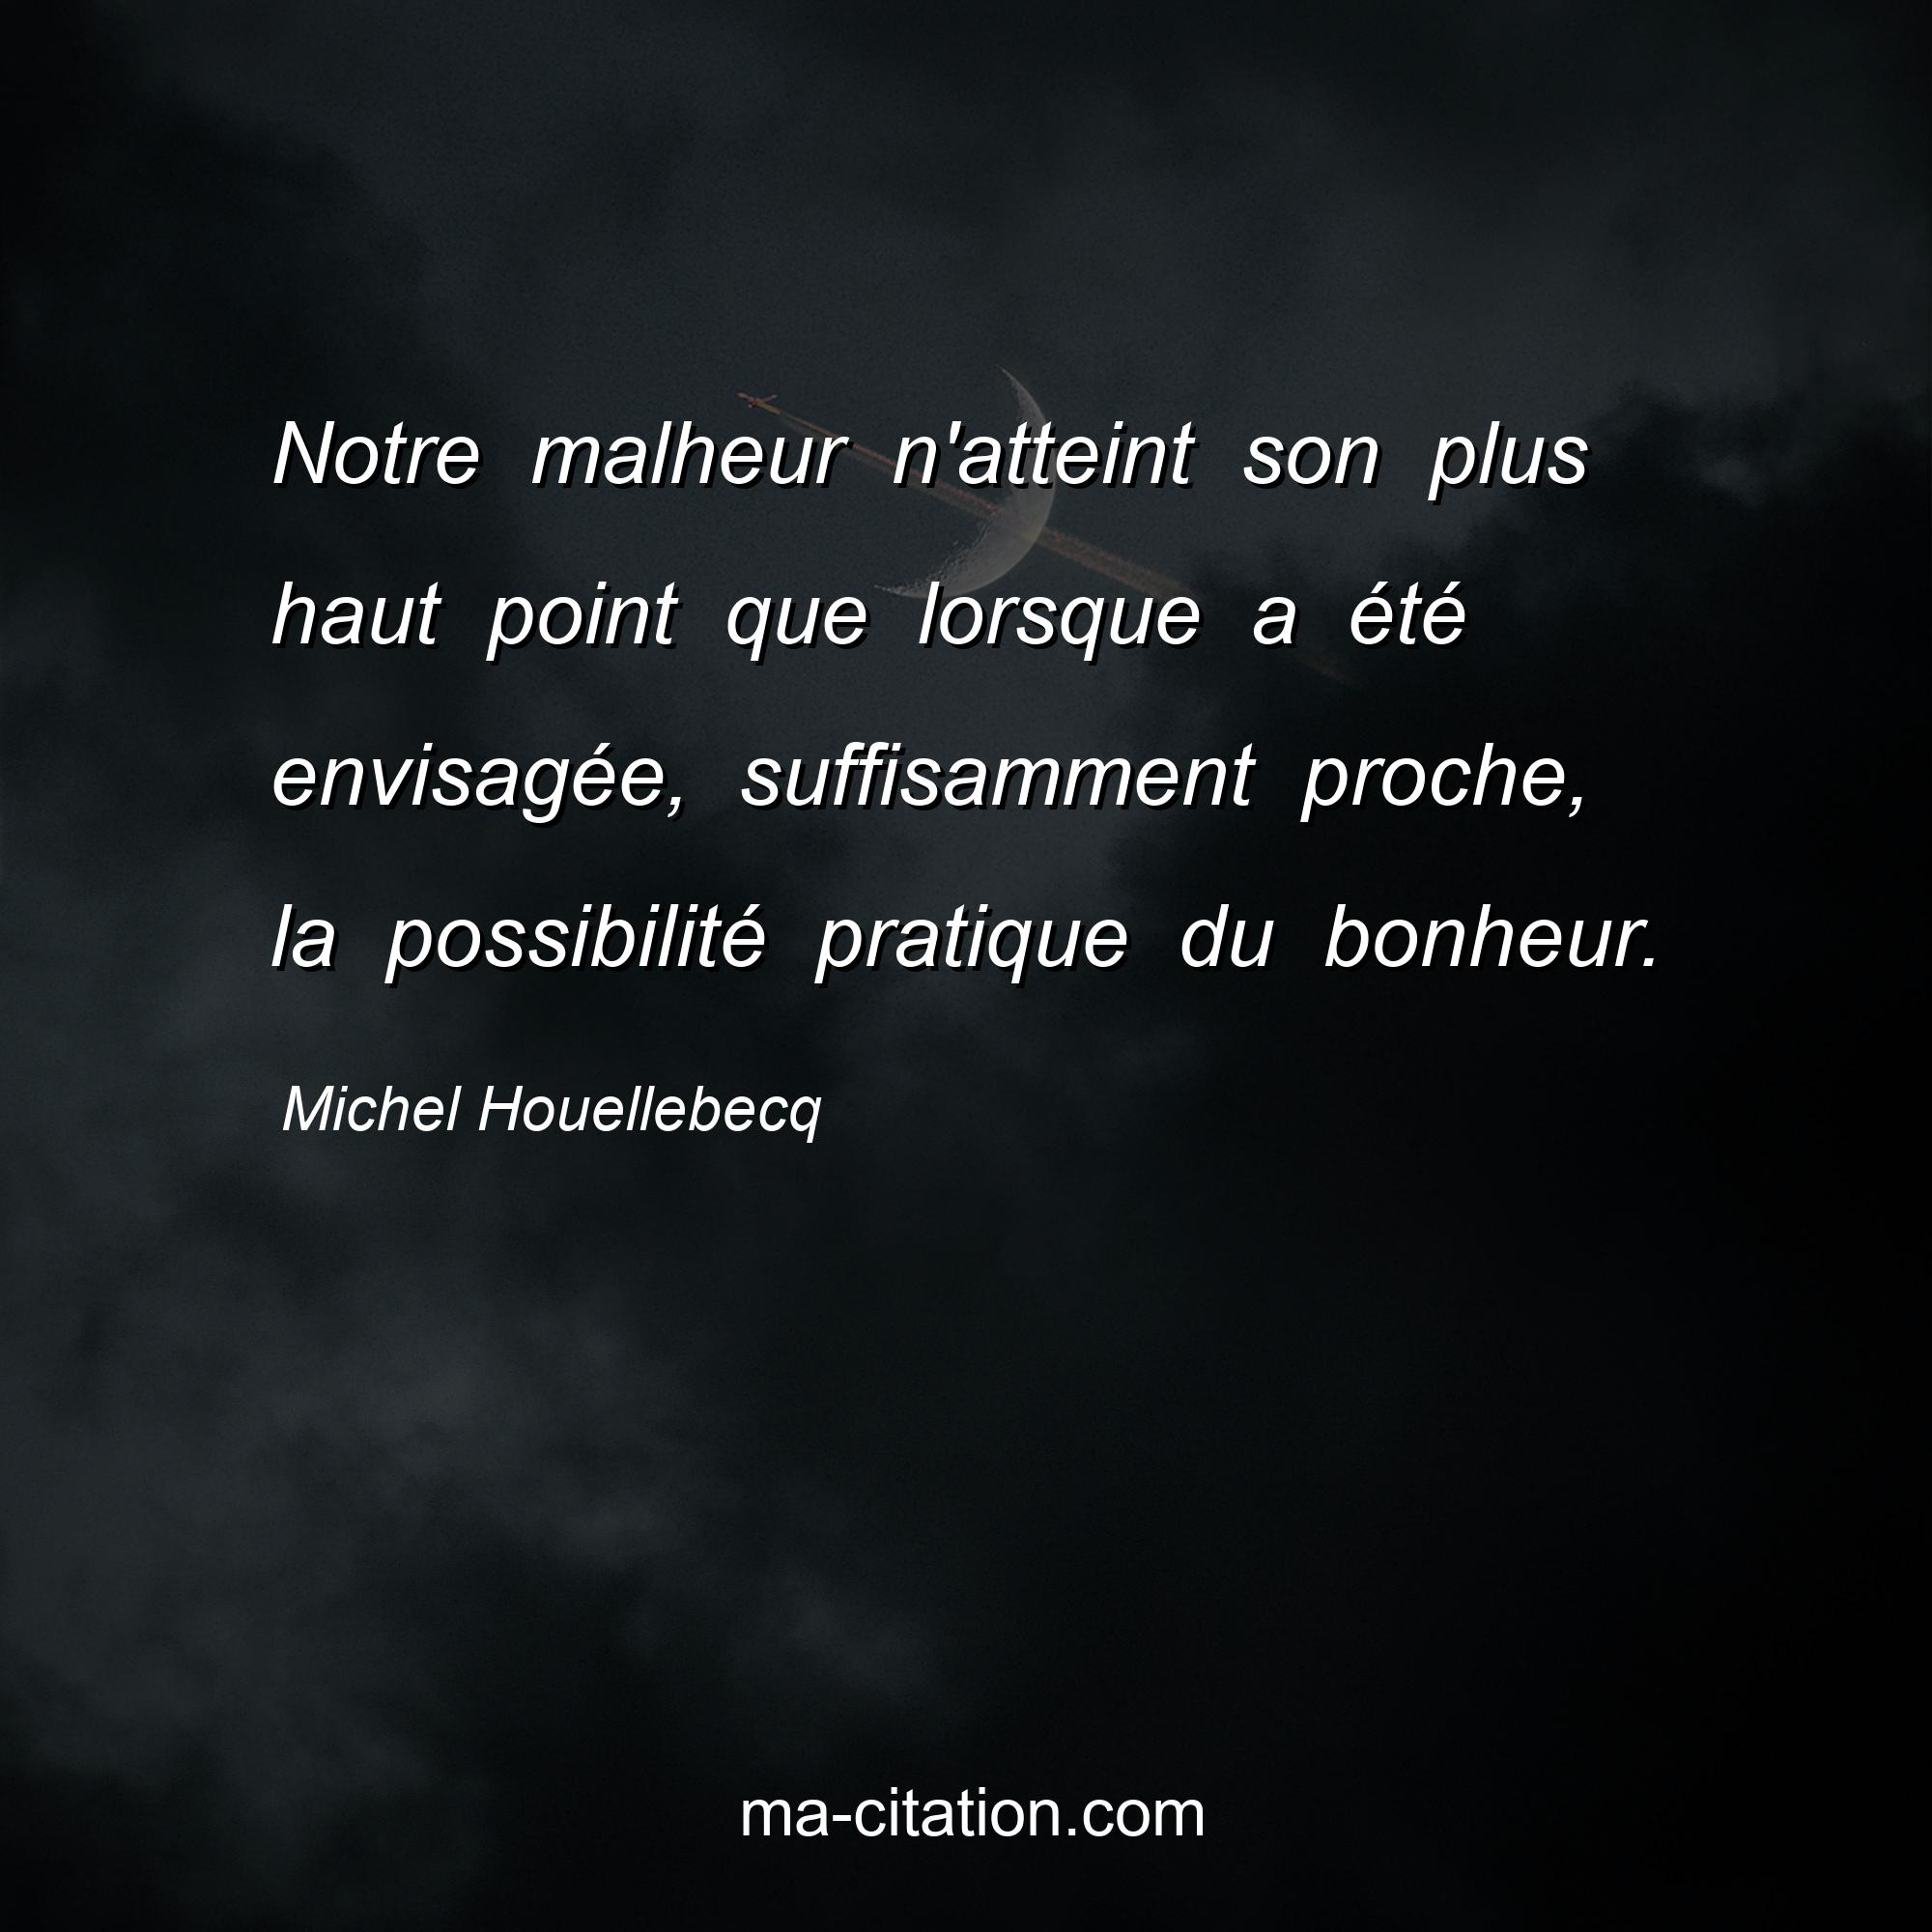 Michel Houellebecq : Notre malheur n'atteint son plus haut point que lorsque a été envisagée, suffisamment proche, la possibilité pratique du bonheur.